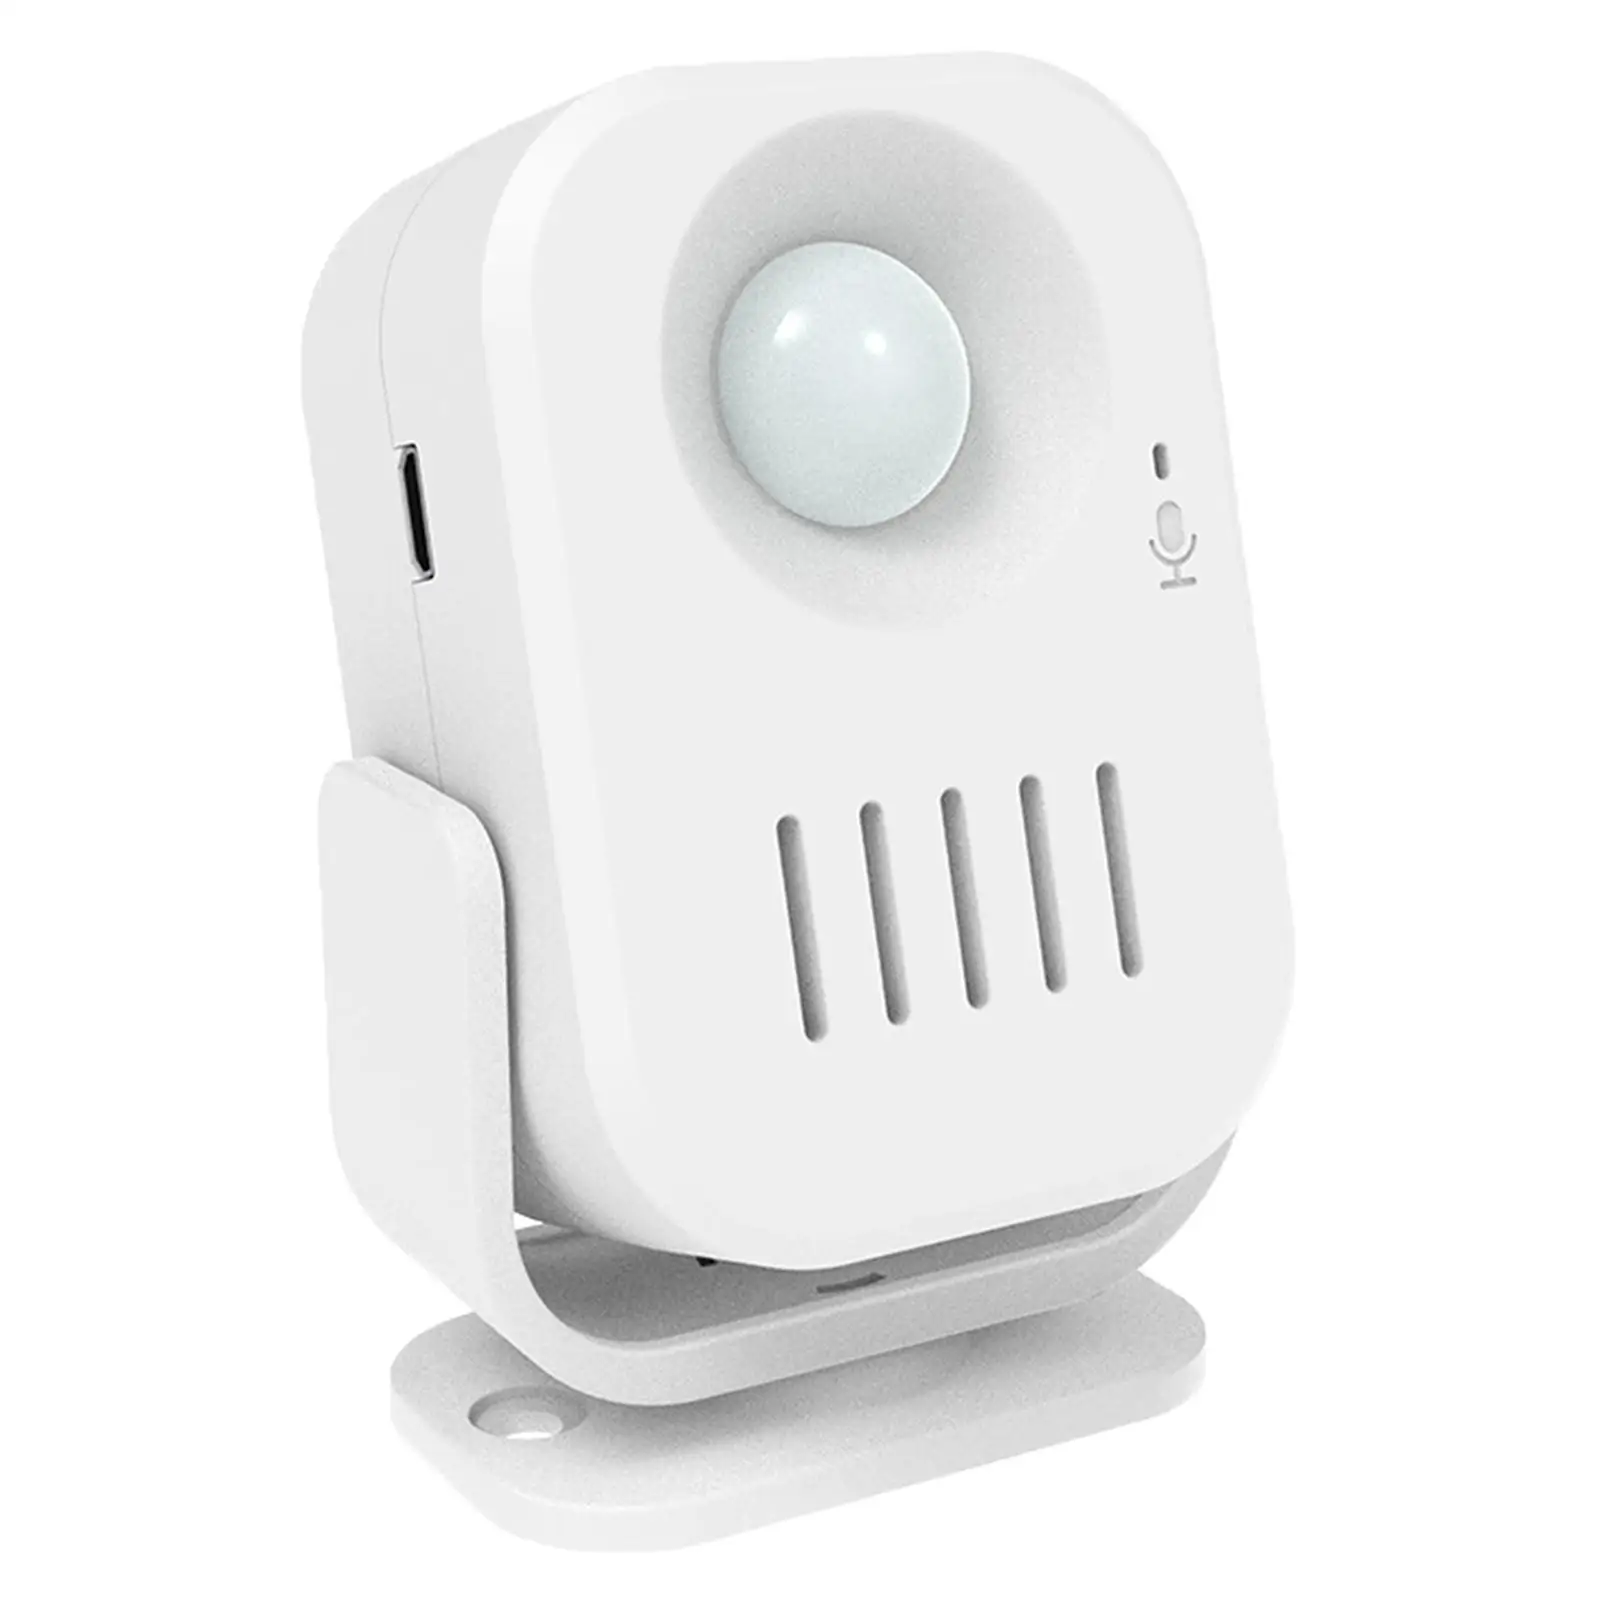 Wireless Motion Sensor Detector Doorbell 2-8M Range Caregiver Reminder Warning Door bells alarm Chime for Entry shop Market